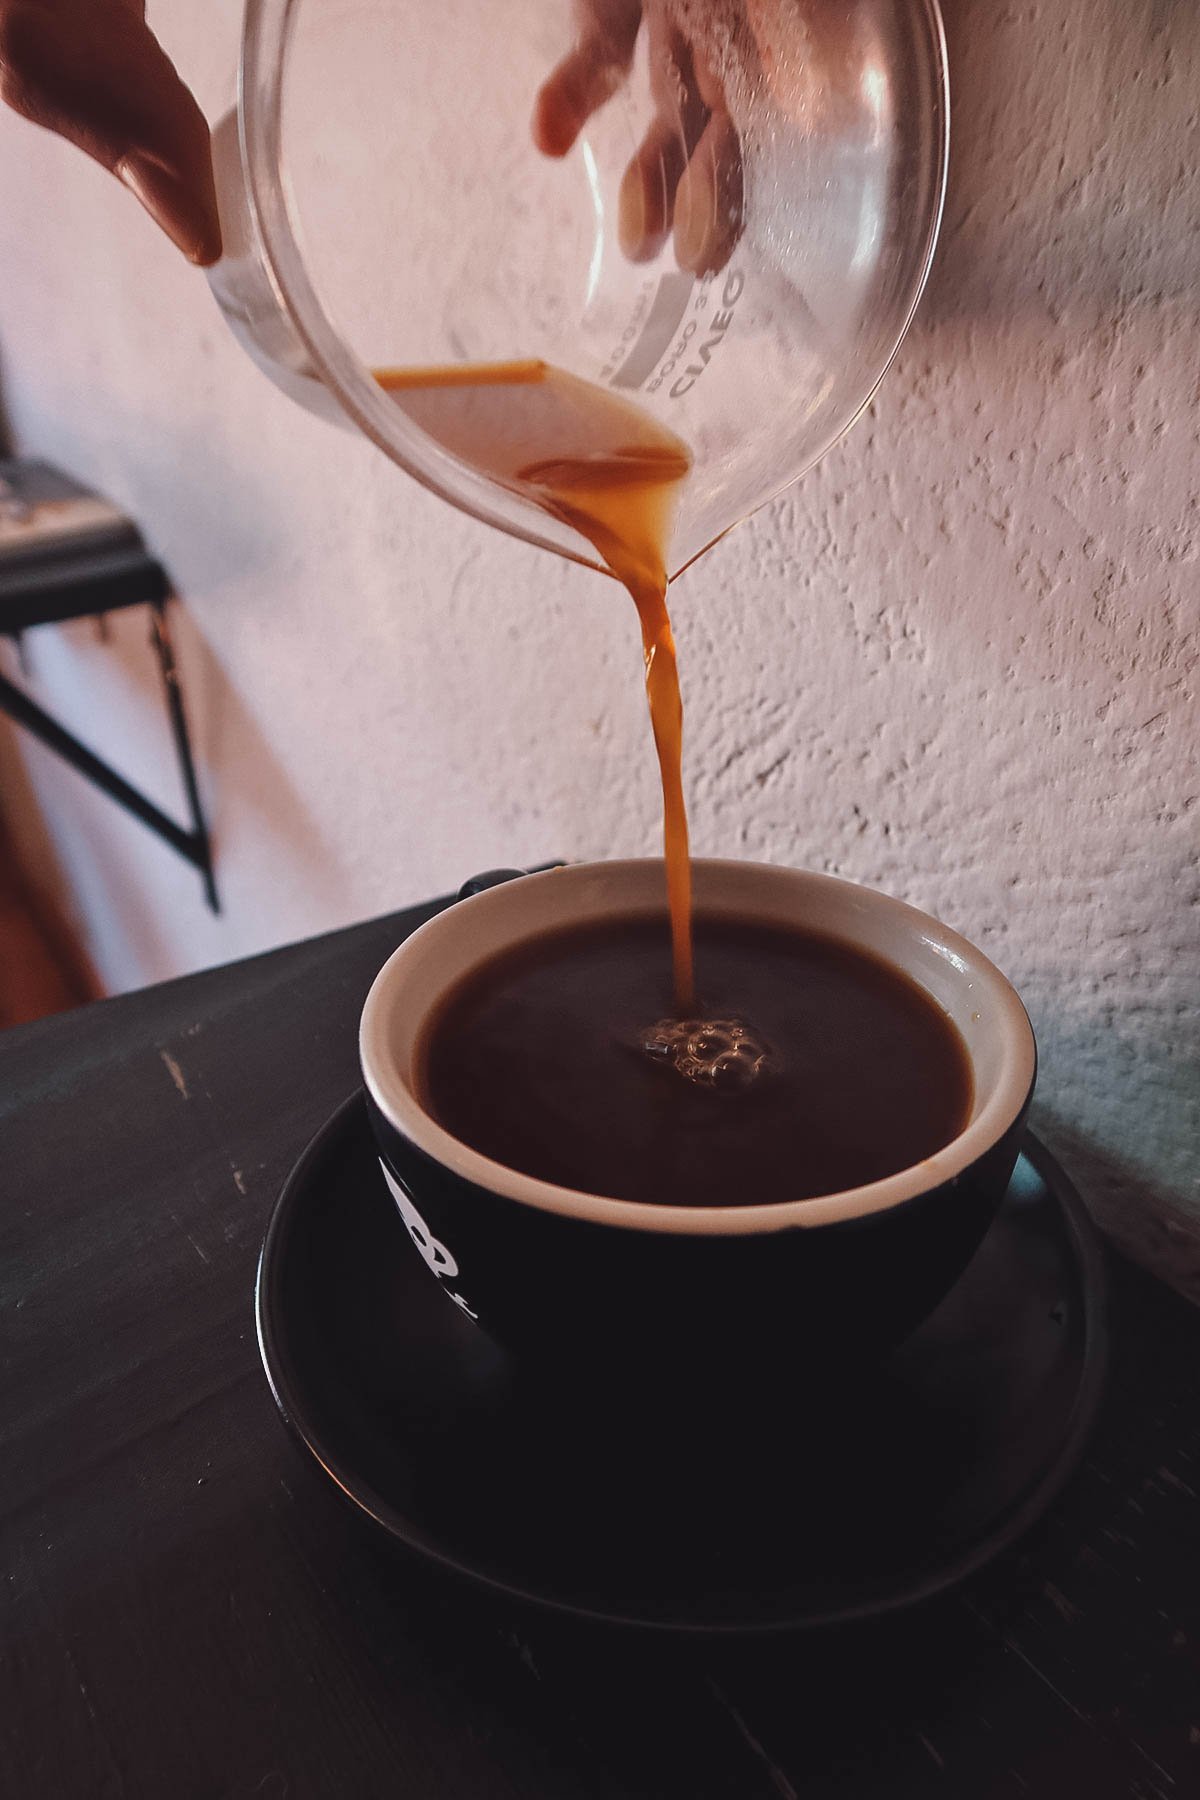 Pouring Aeropress coffee at El Cafe de La Mancha